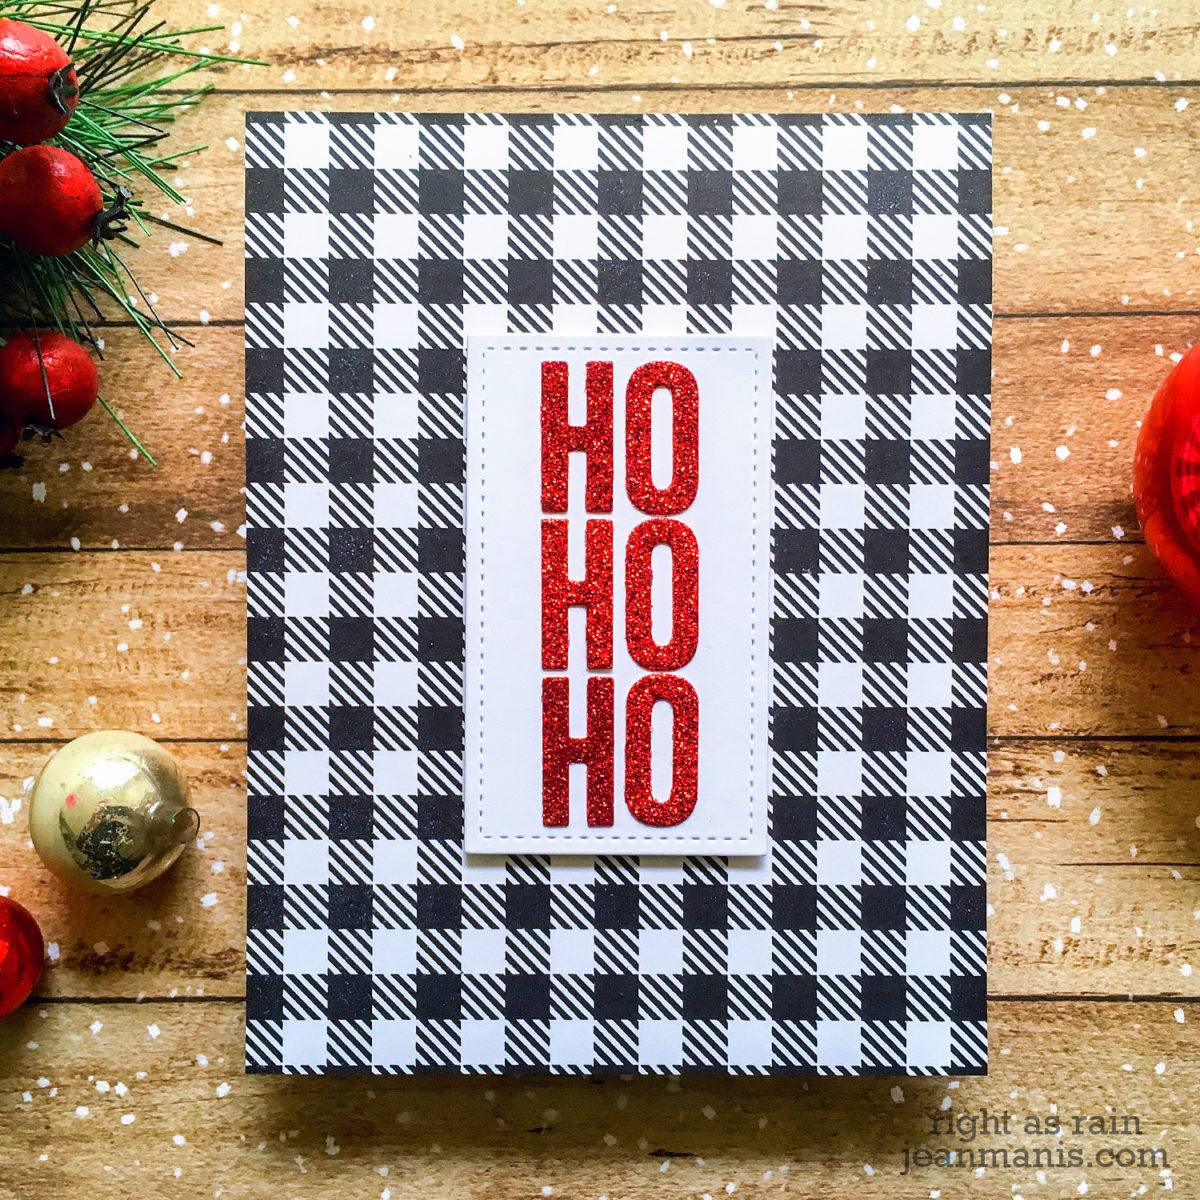 HO HO HO – Ten-Minute CAS Christmas Card